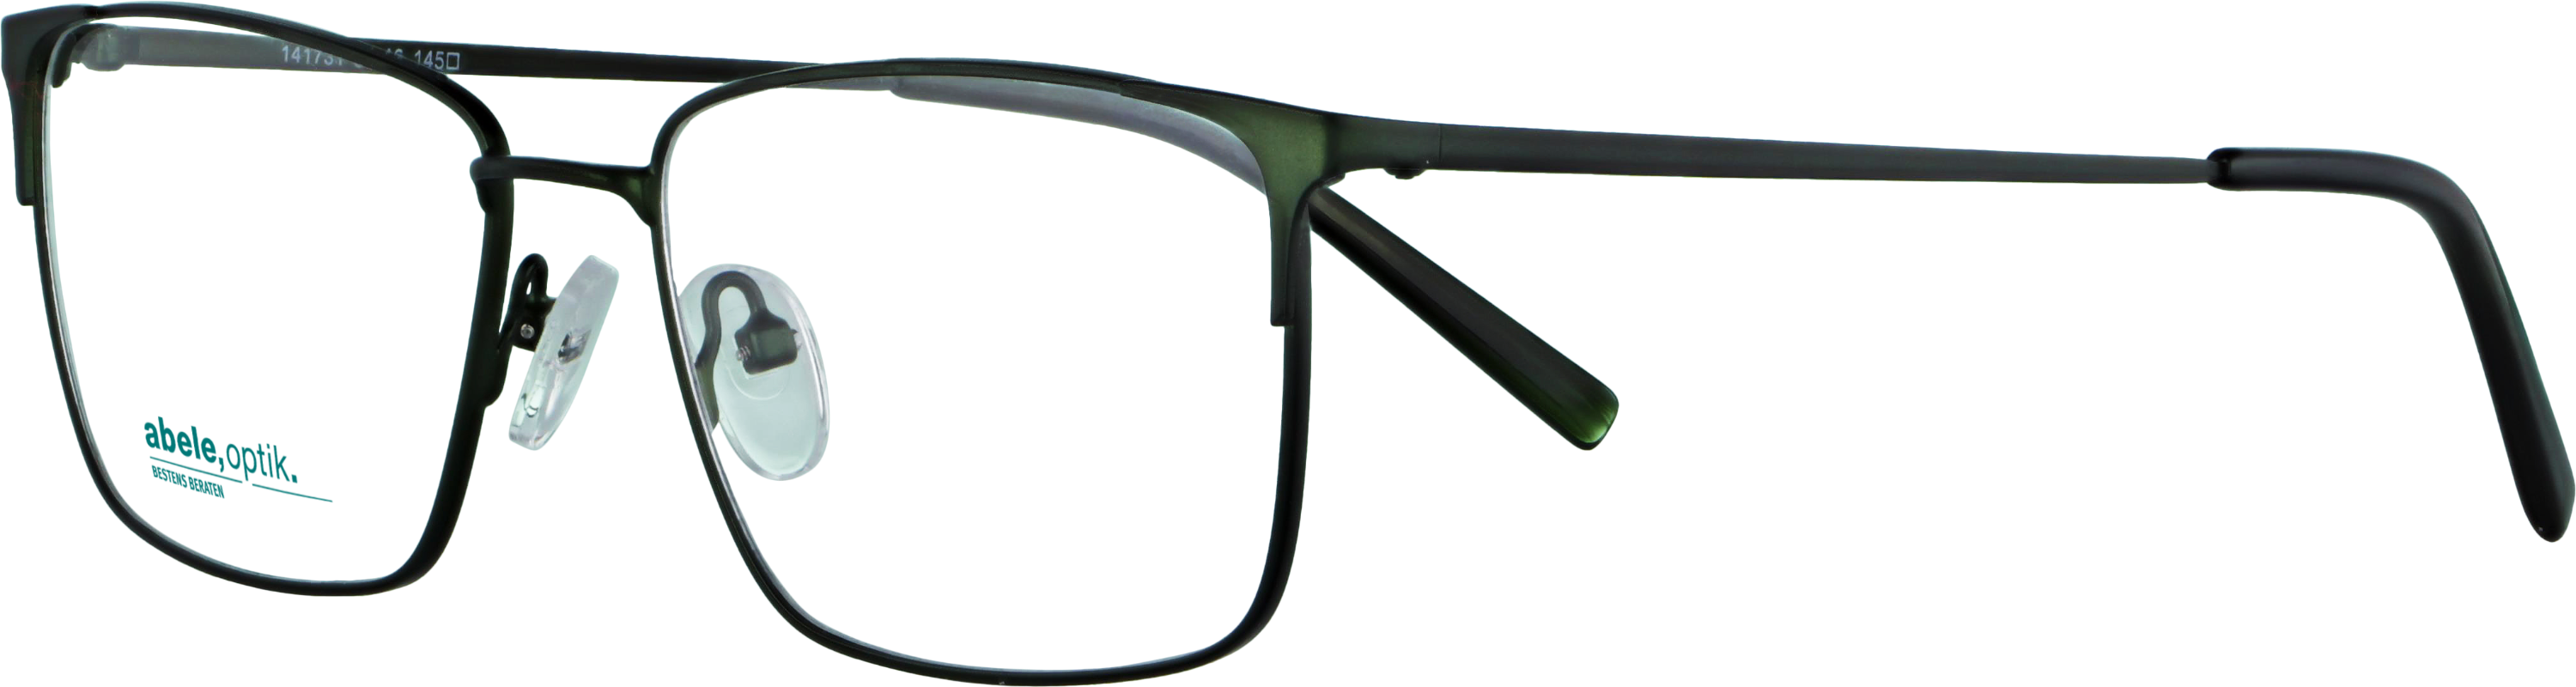 Das Bild zeigt die Korrektionsbrille 141731 von der Marke Abele Optik in dunkelgrün matt.